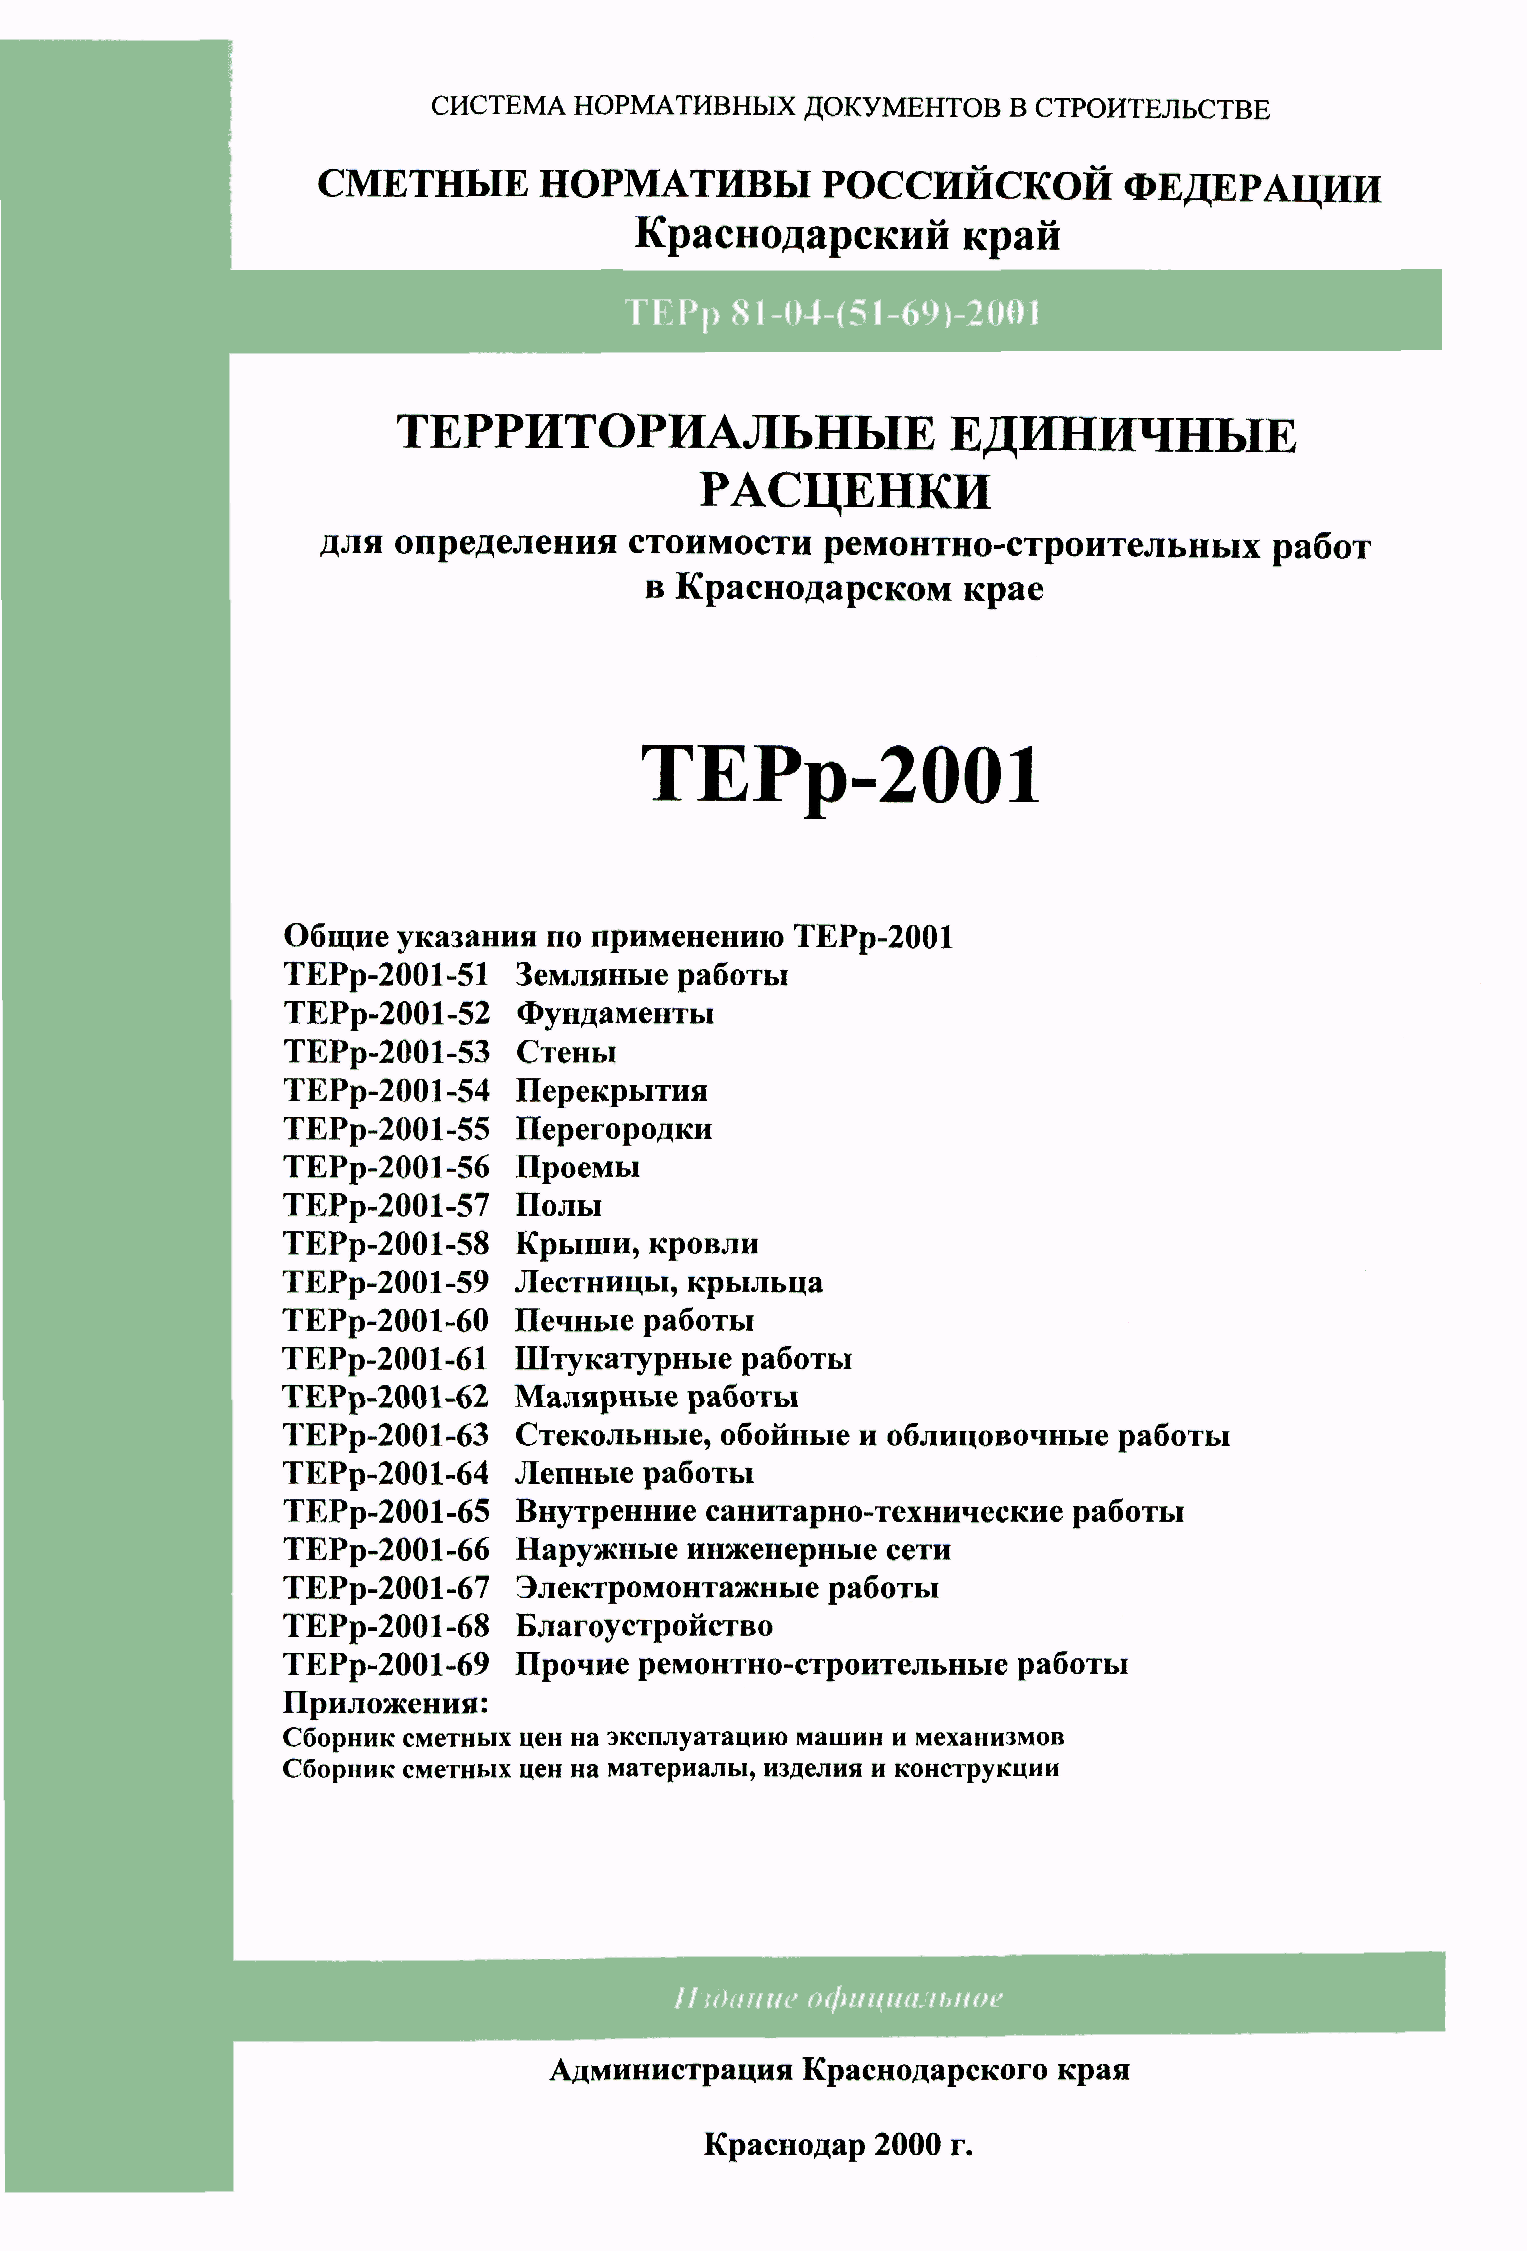 ТЕРр Краснодарского края 2001-69